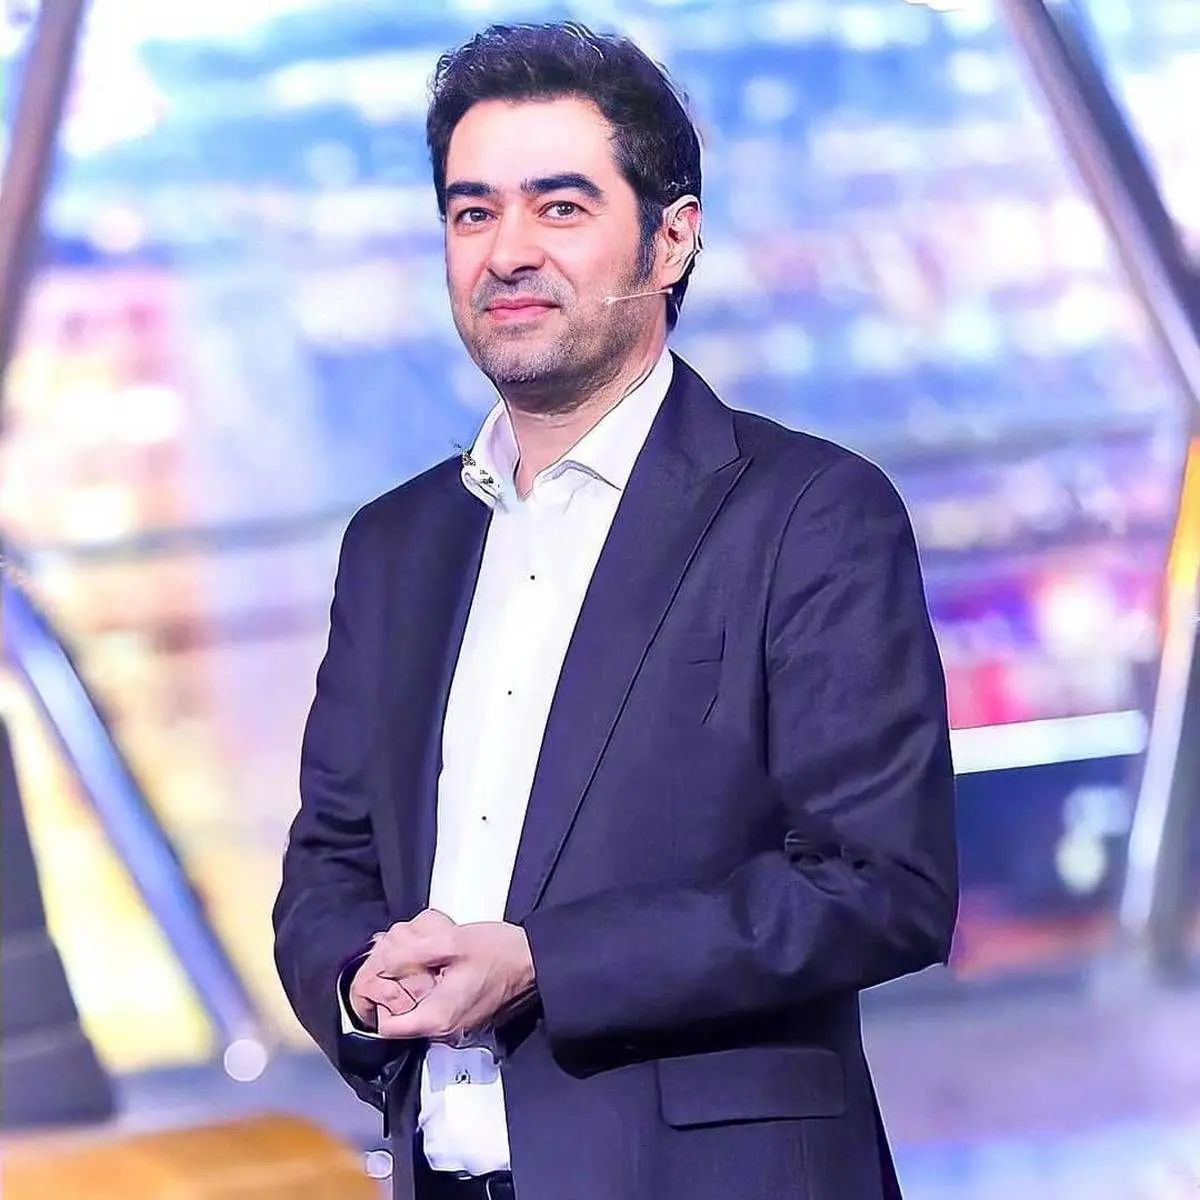 این ویدئو نوستالژی از شهاب حسینی تو 20 سالگیش | سریال دلشکسته شهاب حسینی 20 سالش شد + فیلم